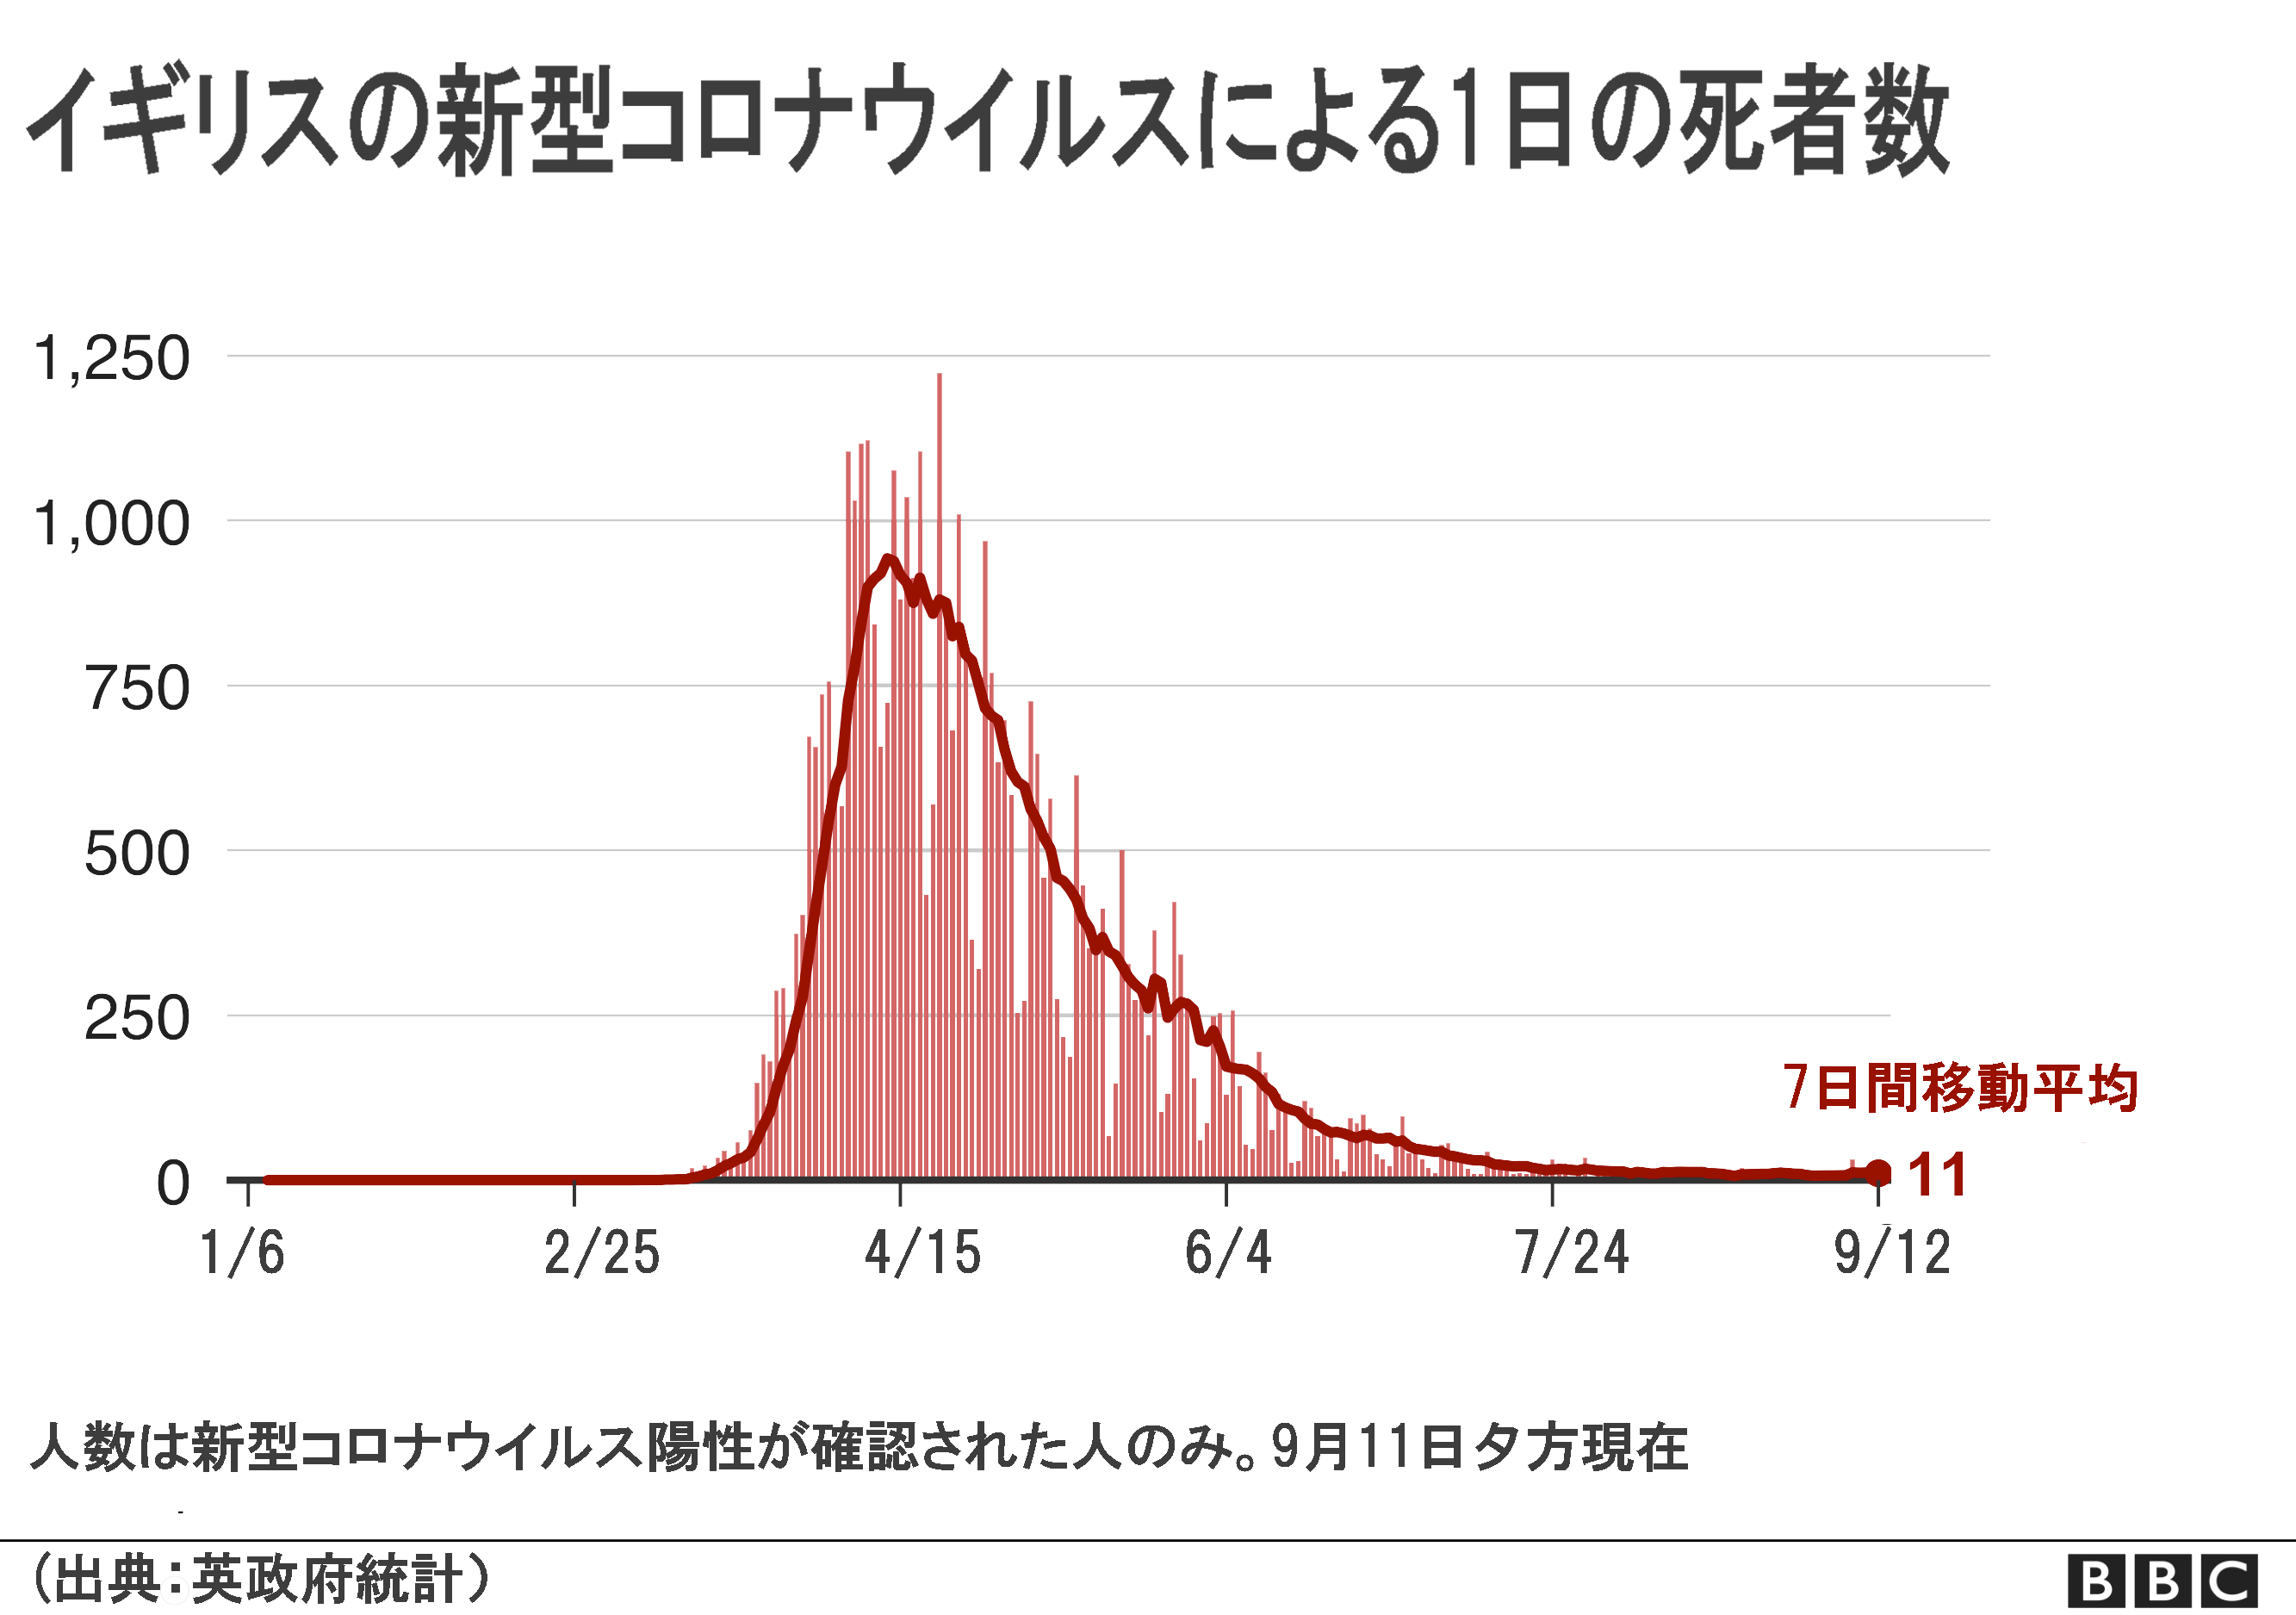 死者 推移 コロナ ｢統計上はコロナではないが…｣東京の4月死亡者数は例年より1000人以上多い 累計のコロナ死者は120人なのに…